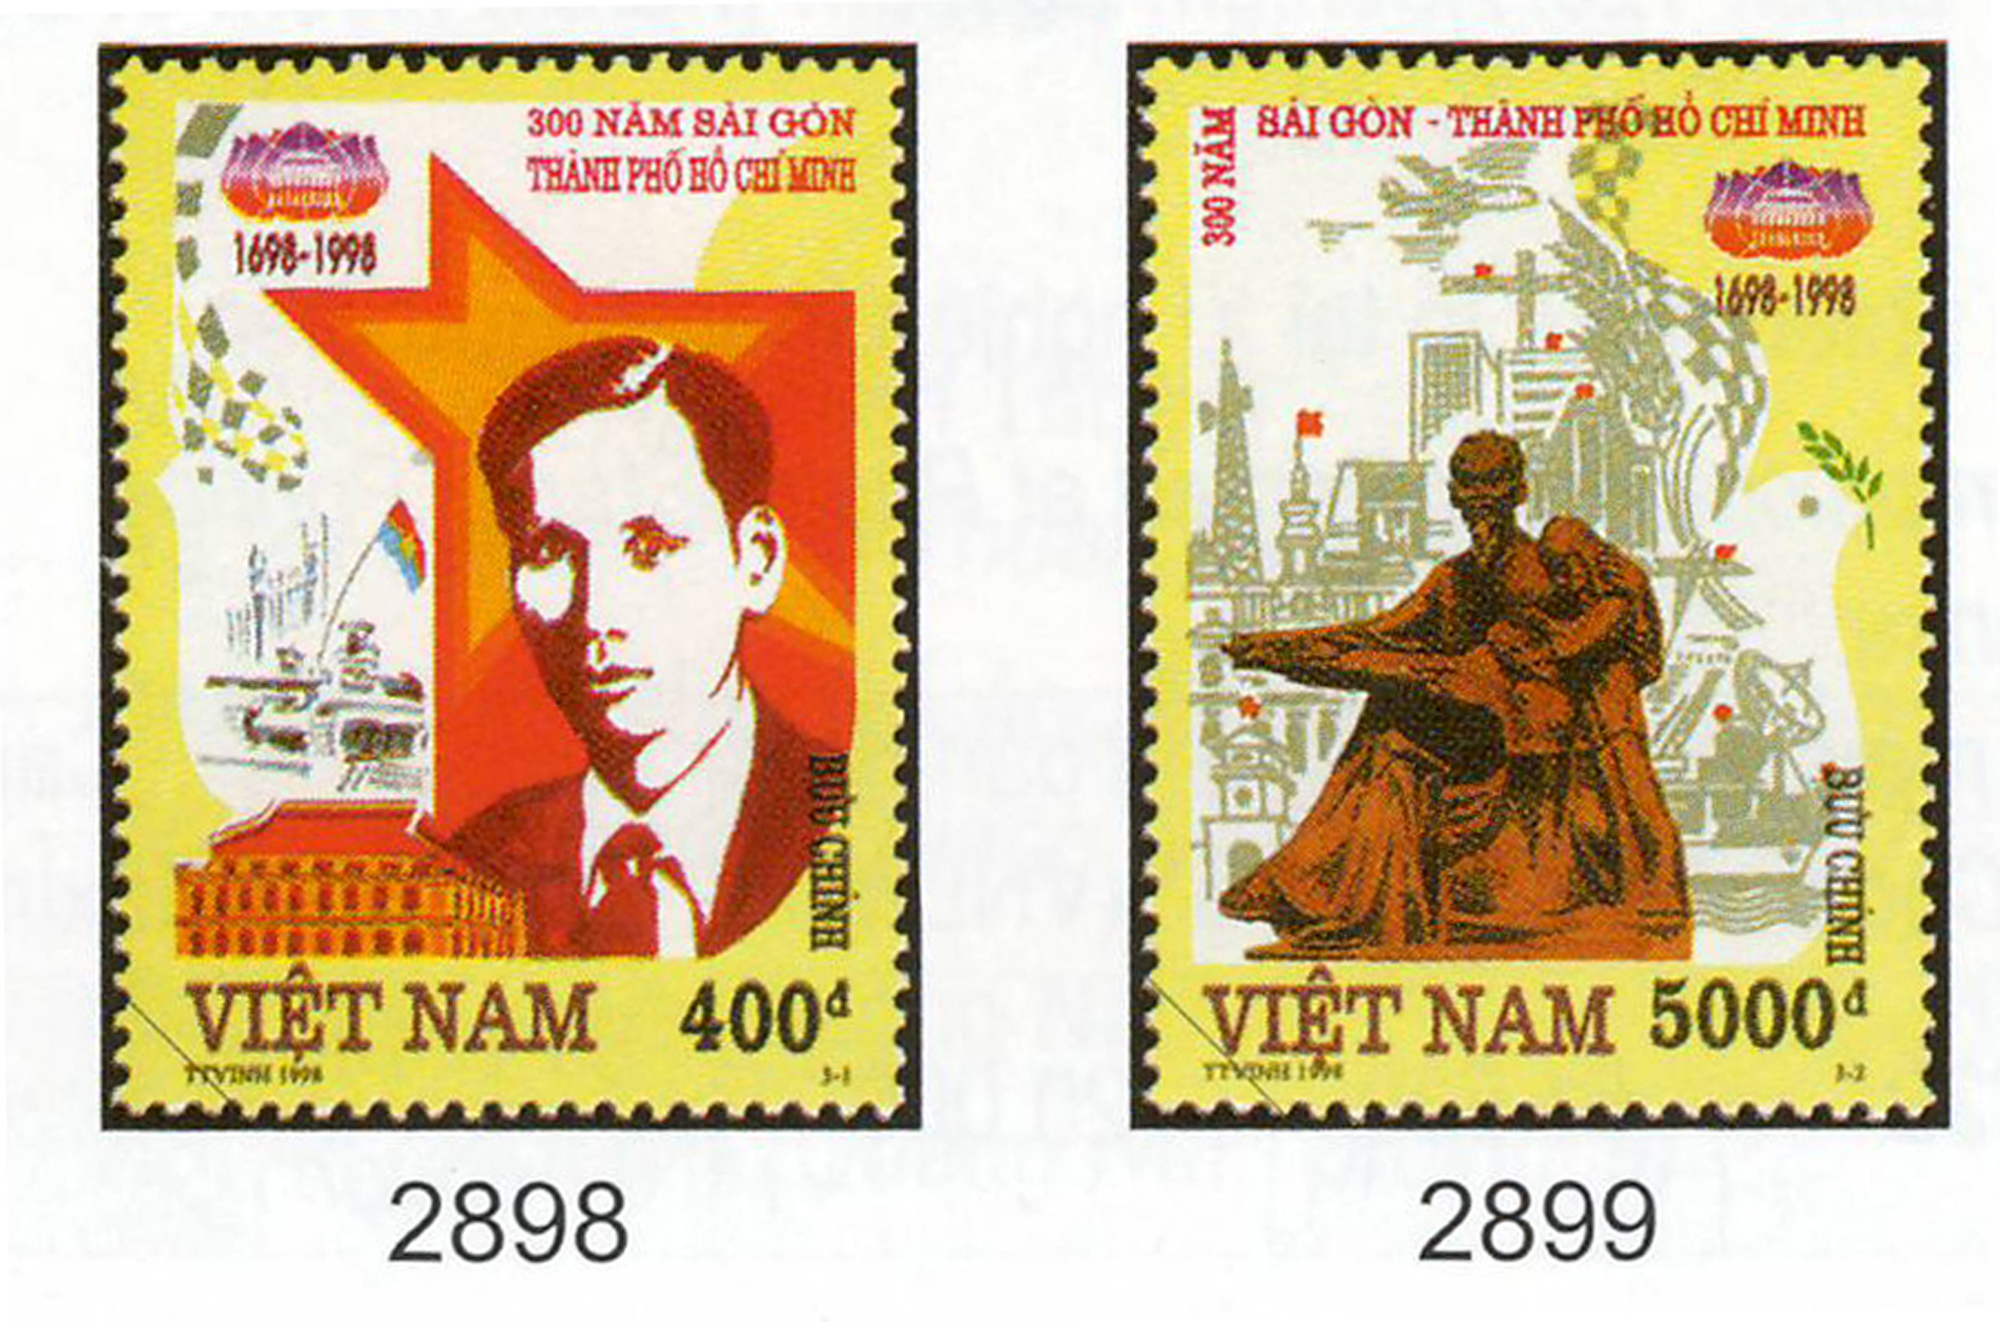 Bộ tem 300 năm Sài Gòn-Thành phố Hồ Chí Minh (1698-1998) do họa sỹ Trần Thế Vinh thiết kế.